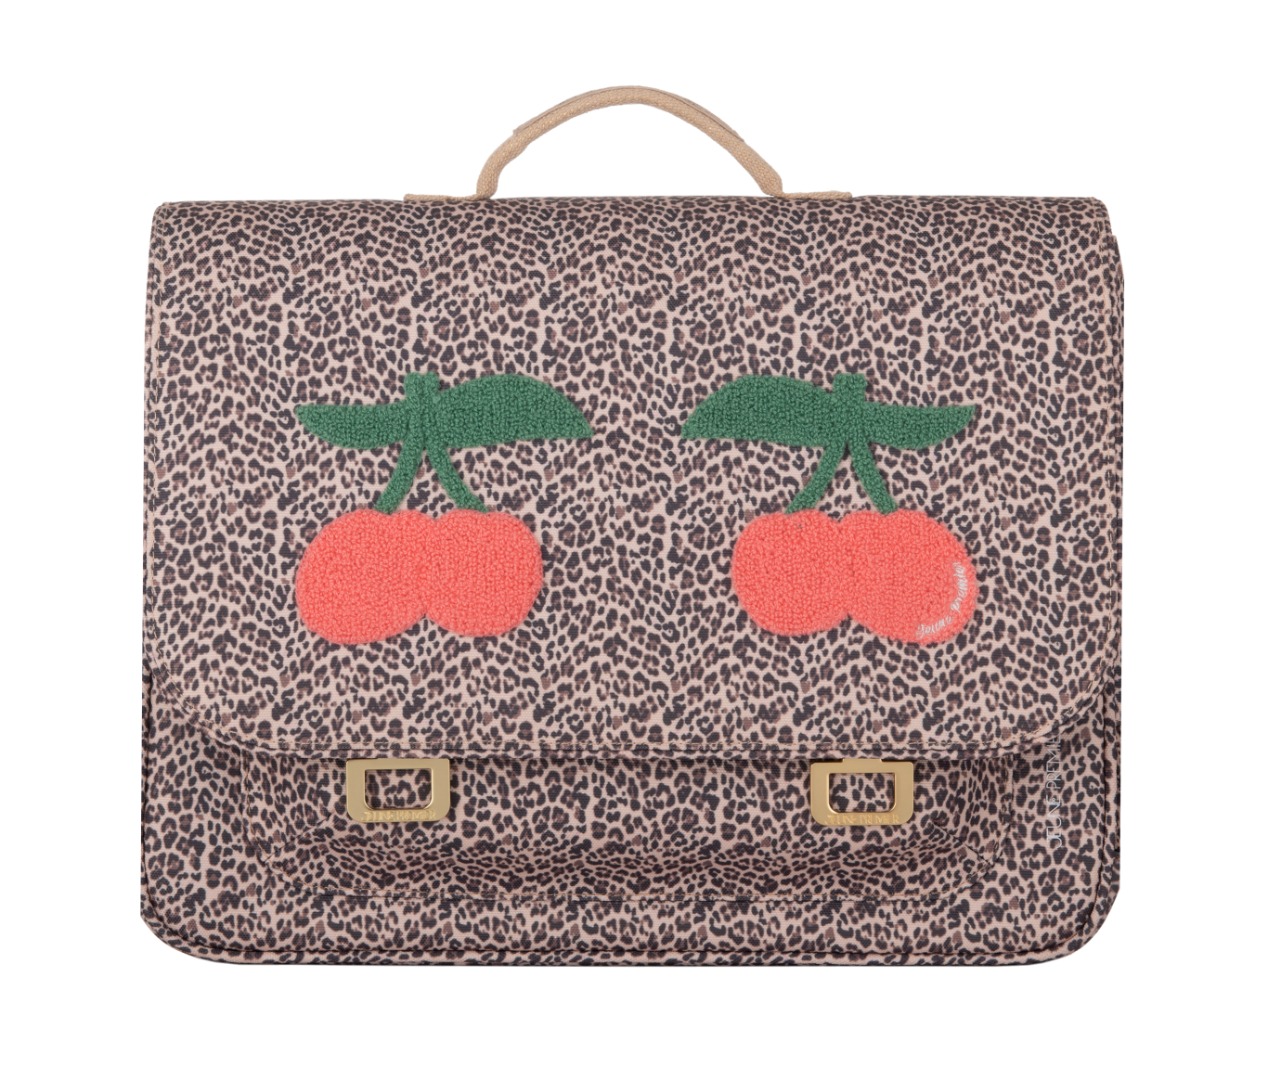 It Bag Midi Leopard Cherry